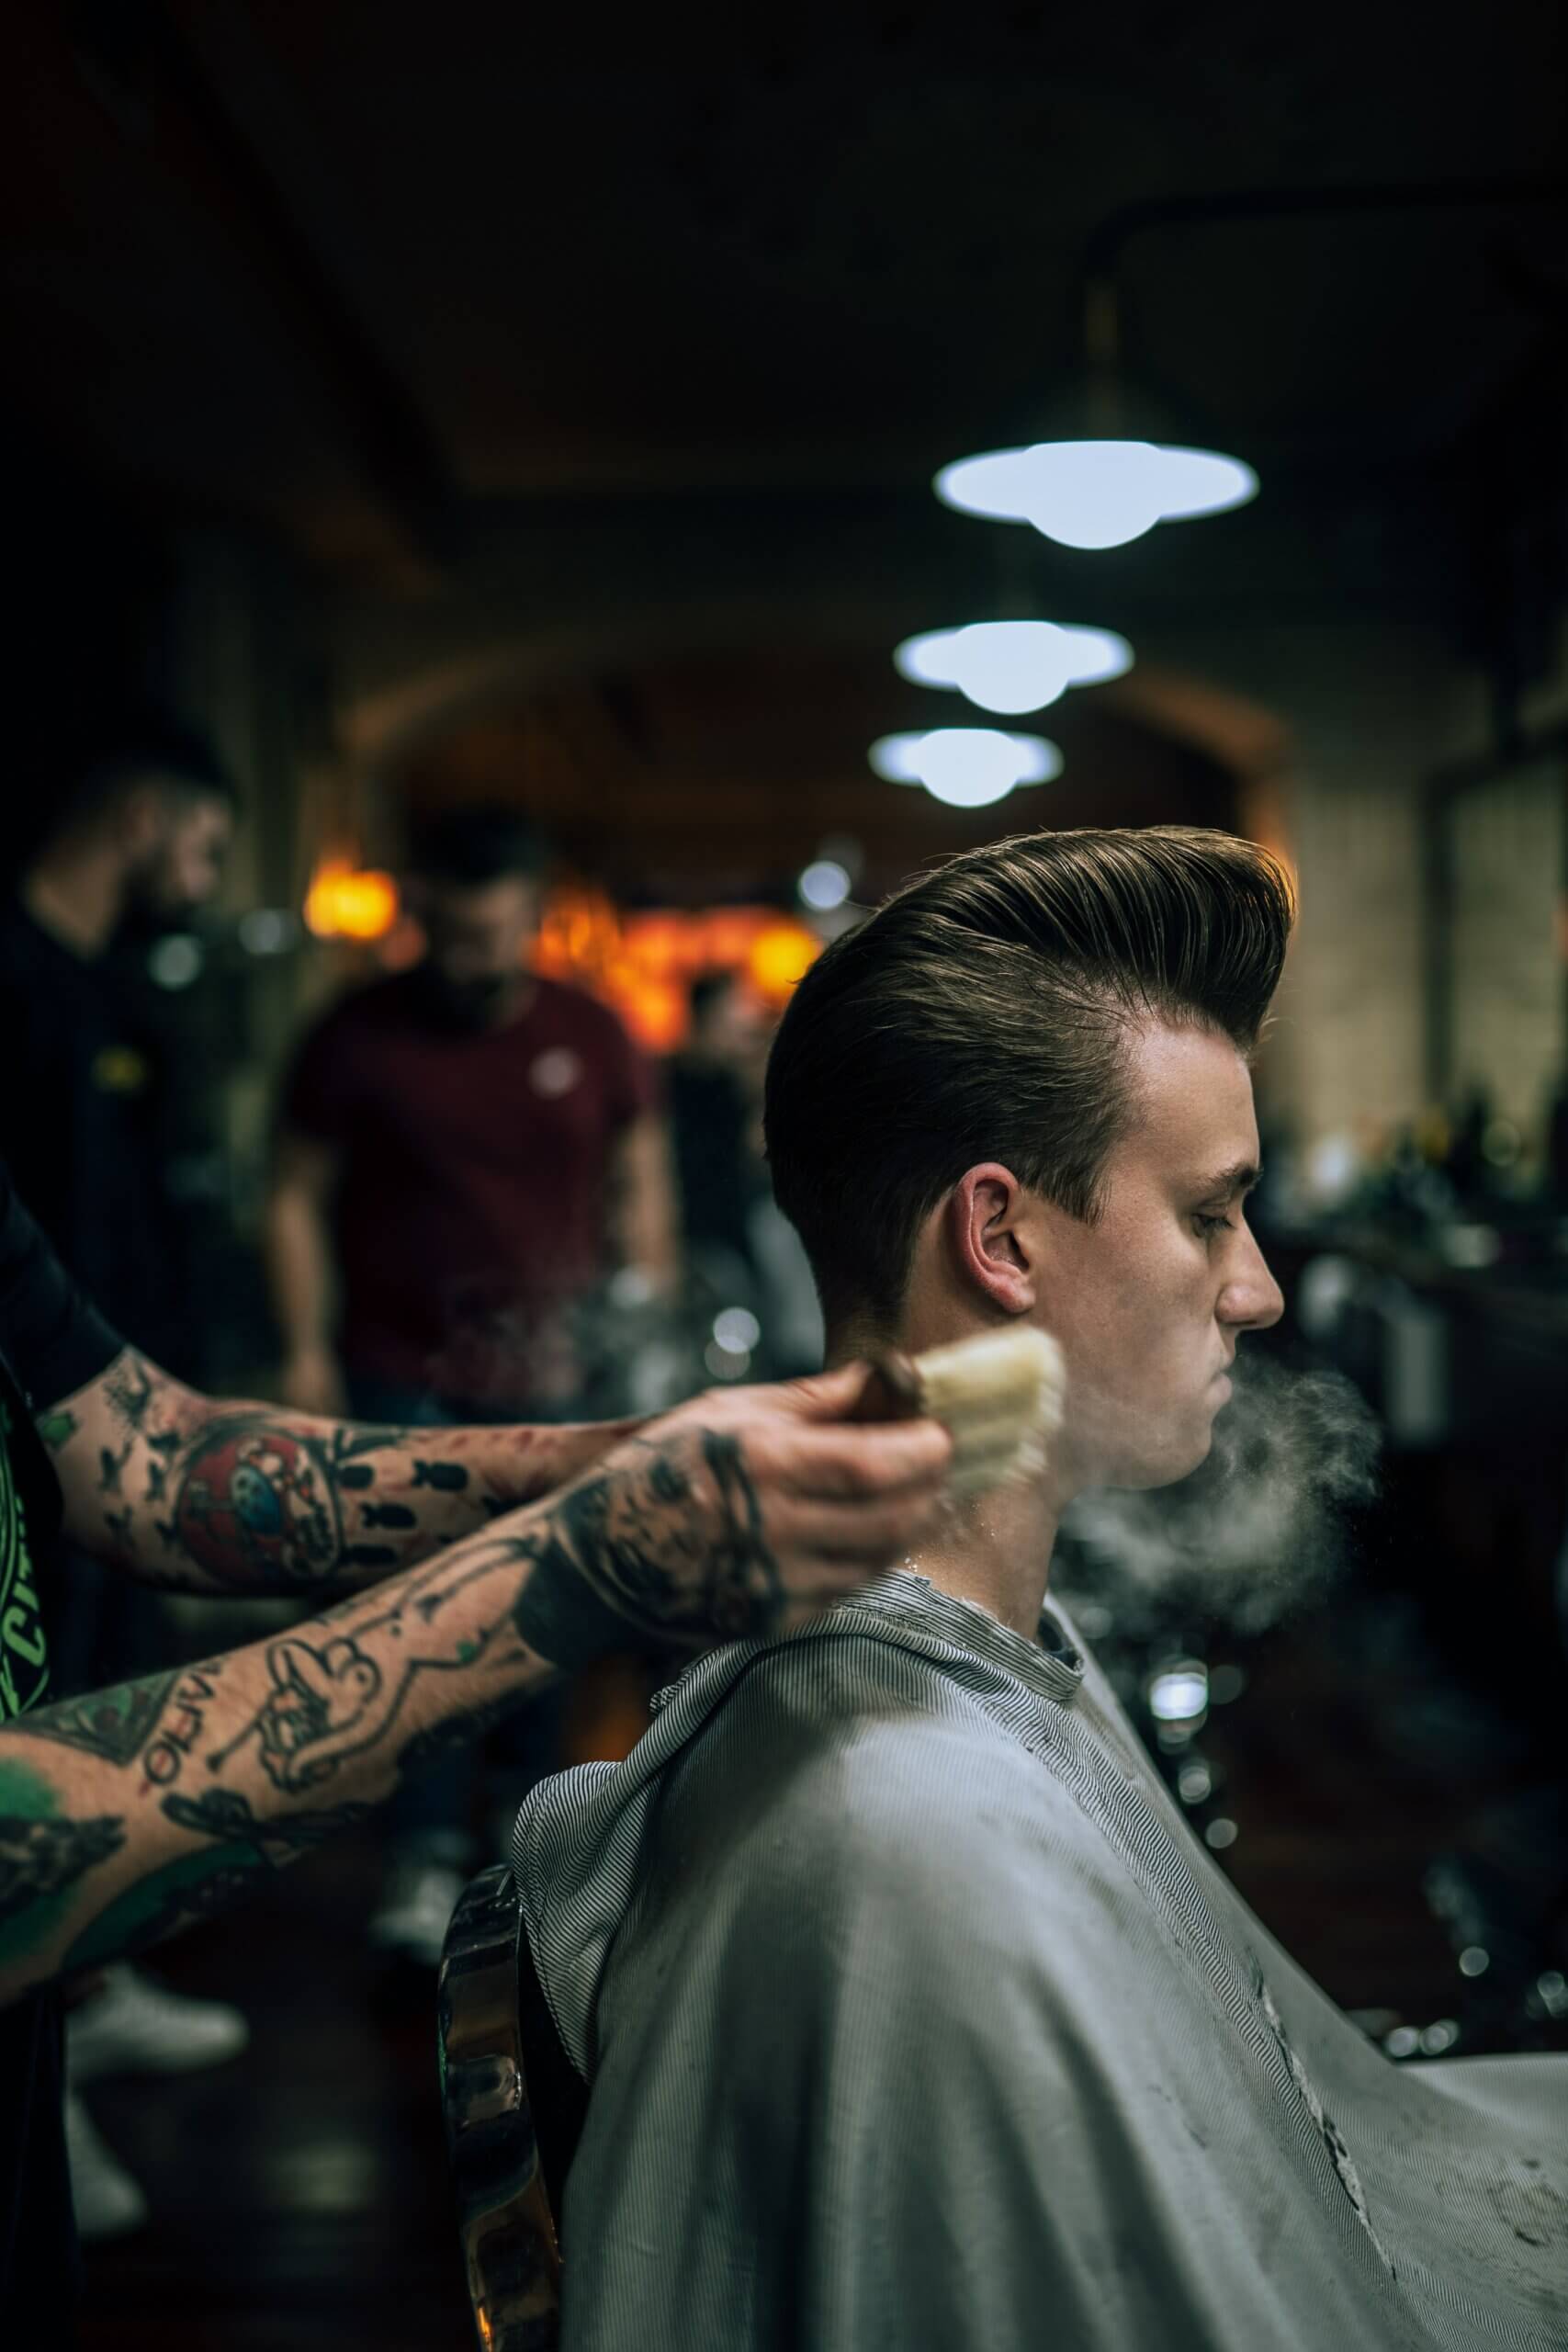 Barbersaloner og samfundet 